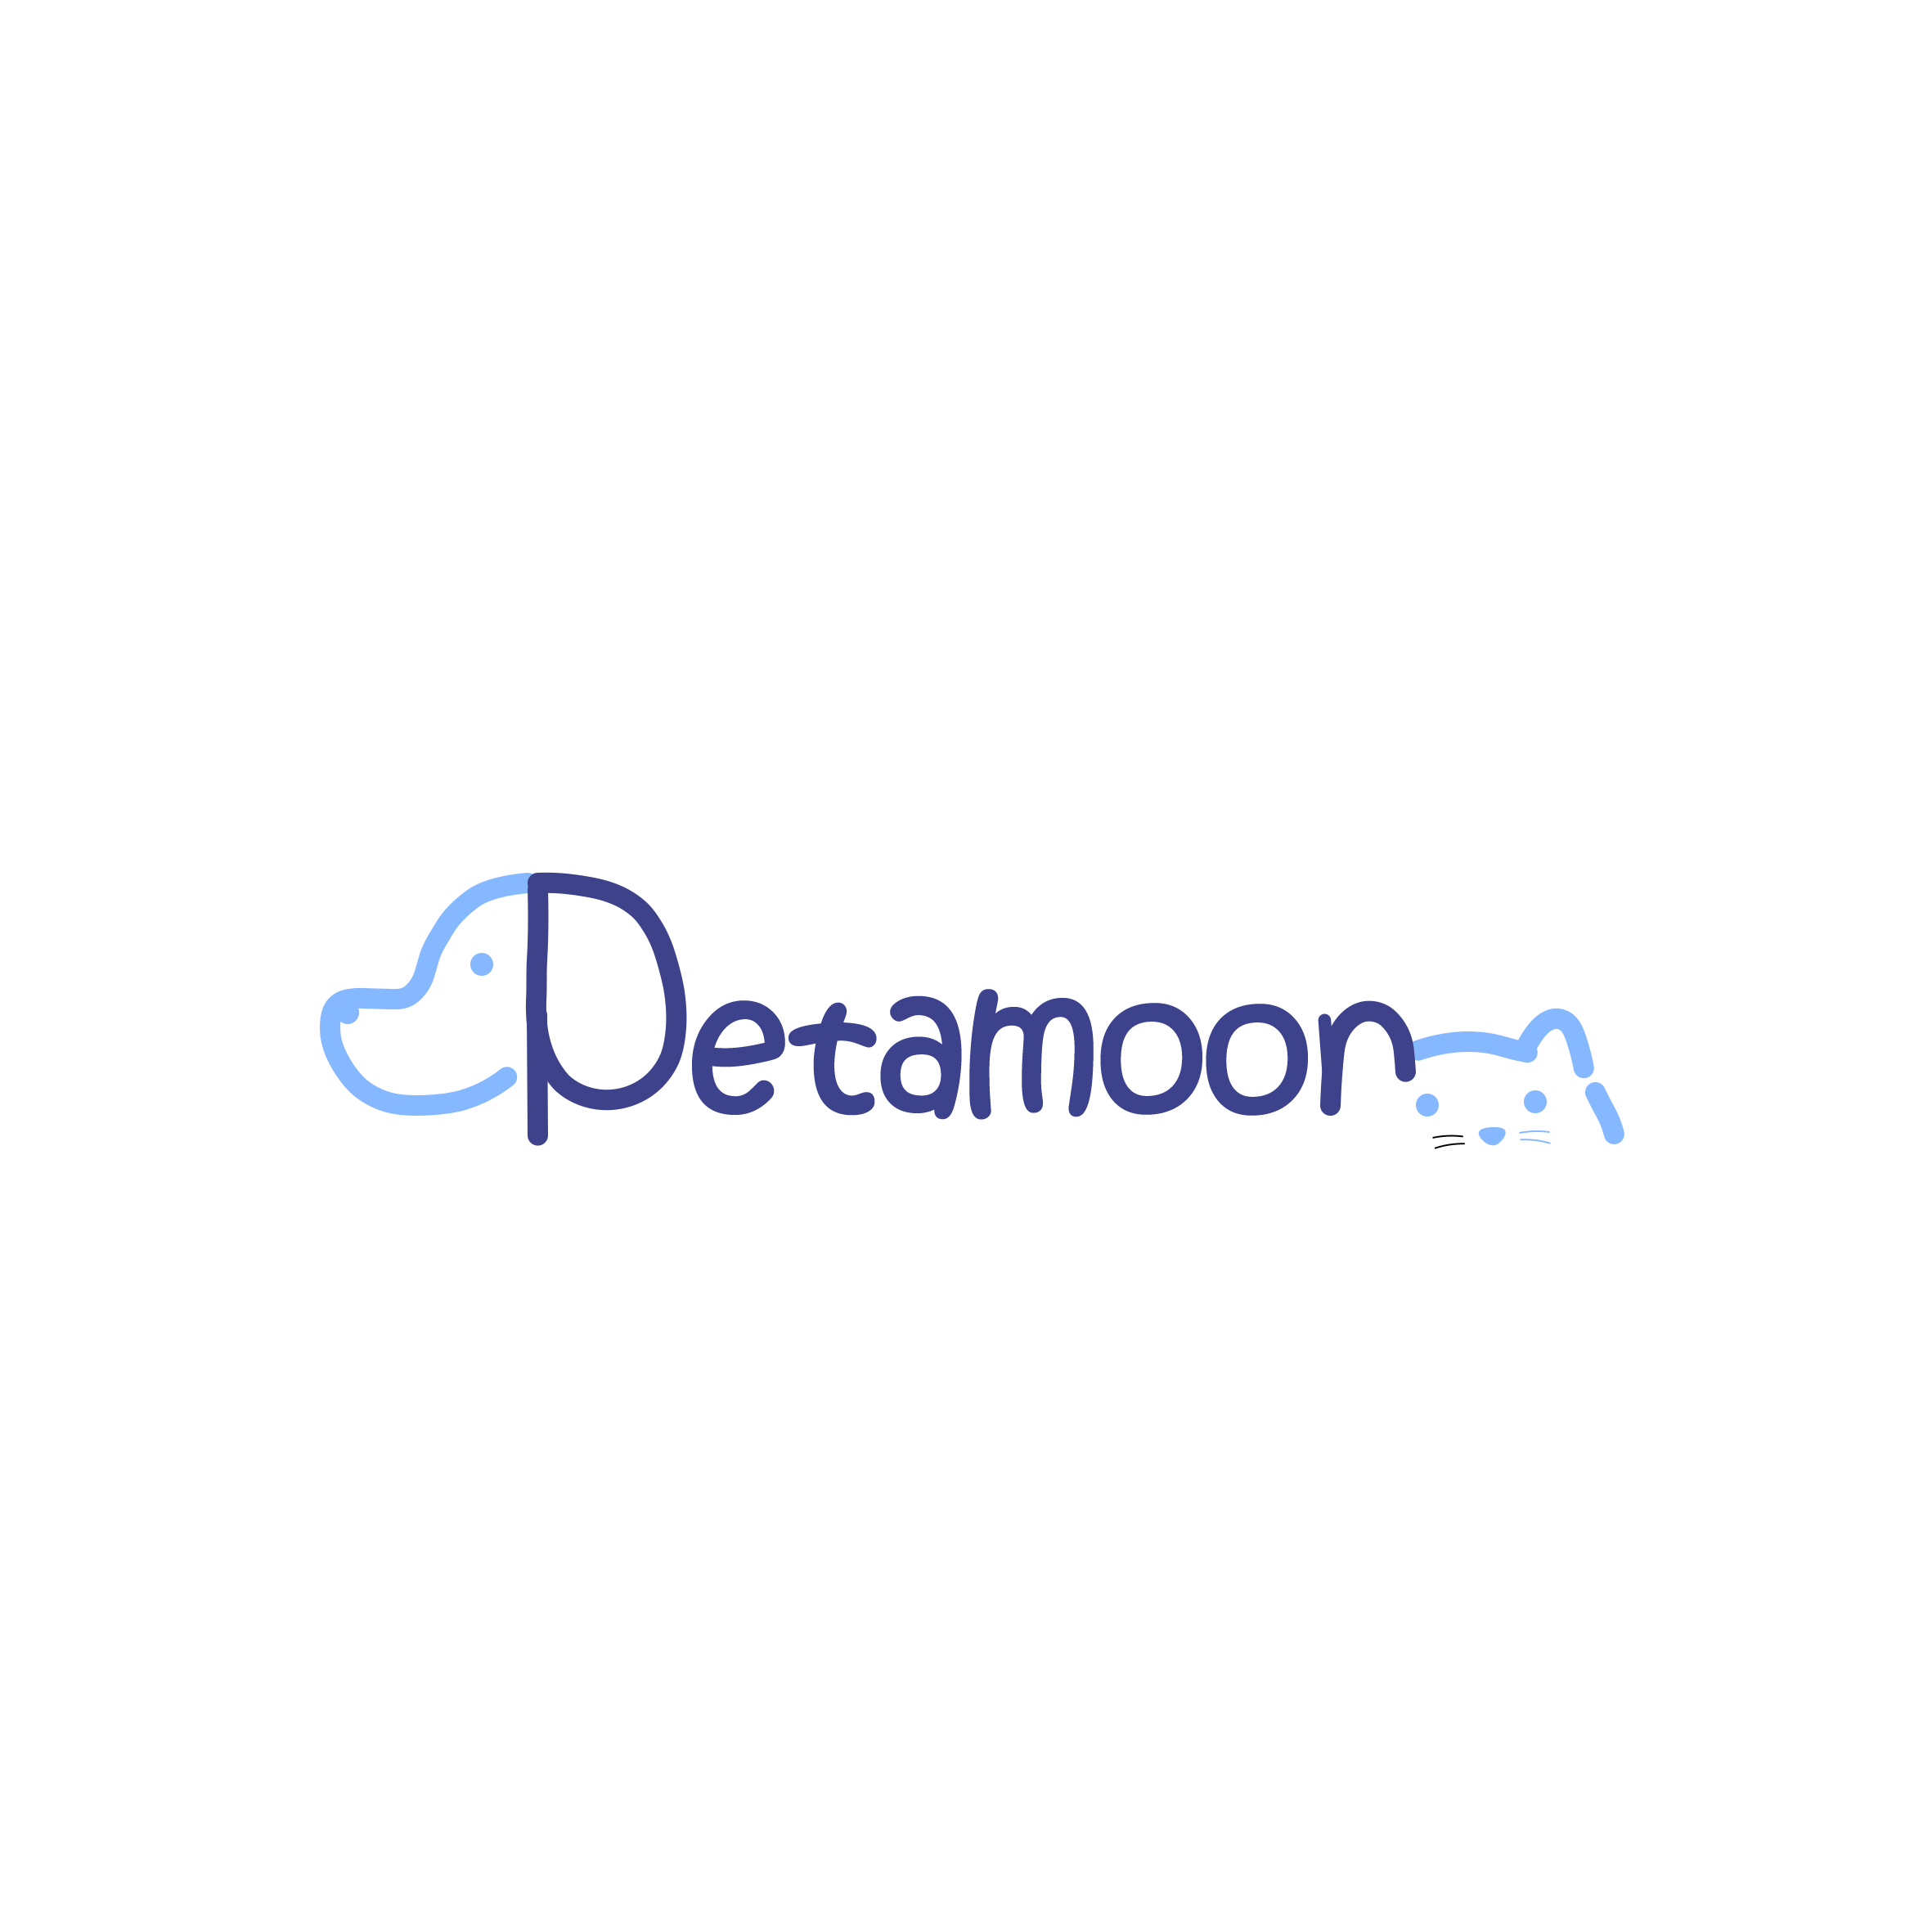 petamoon petshop logo in blue color